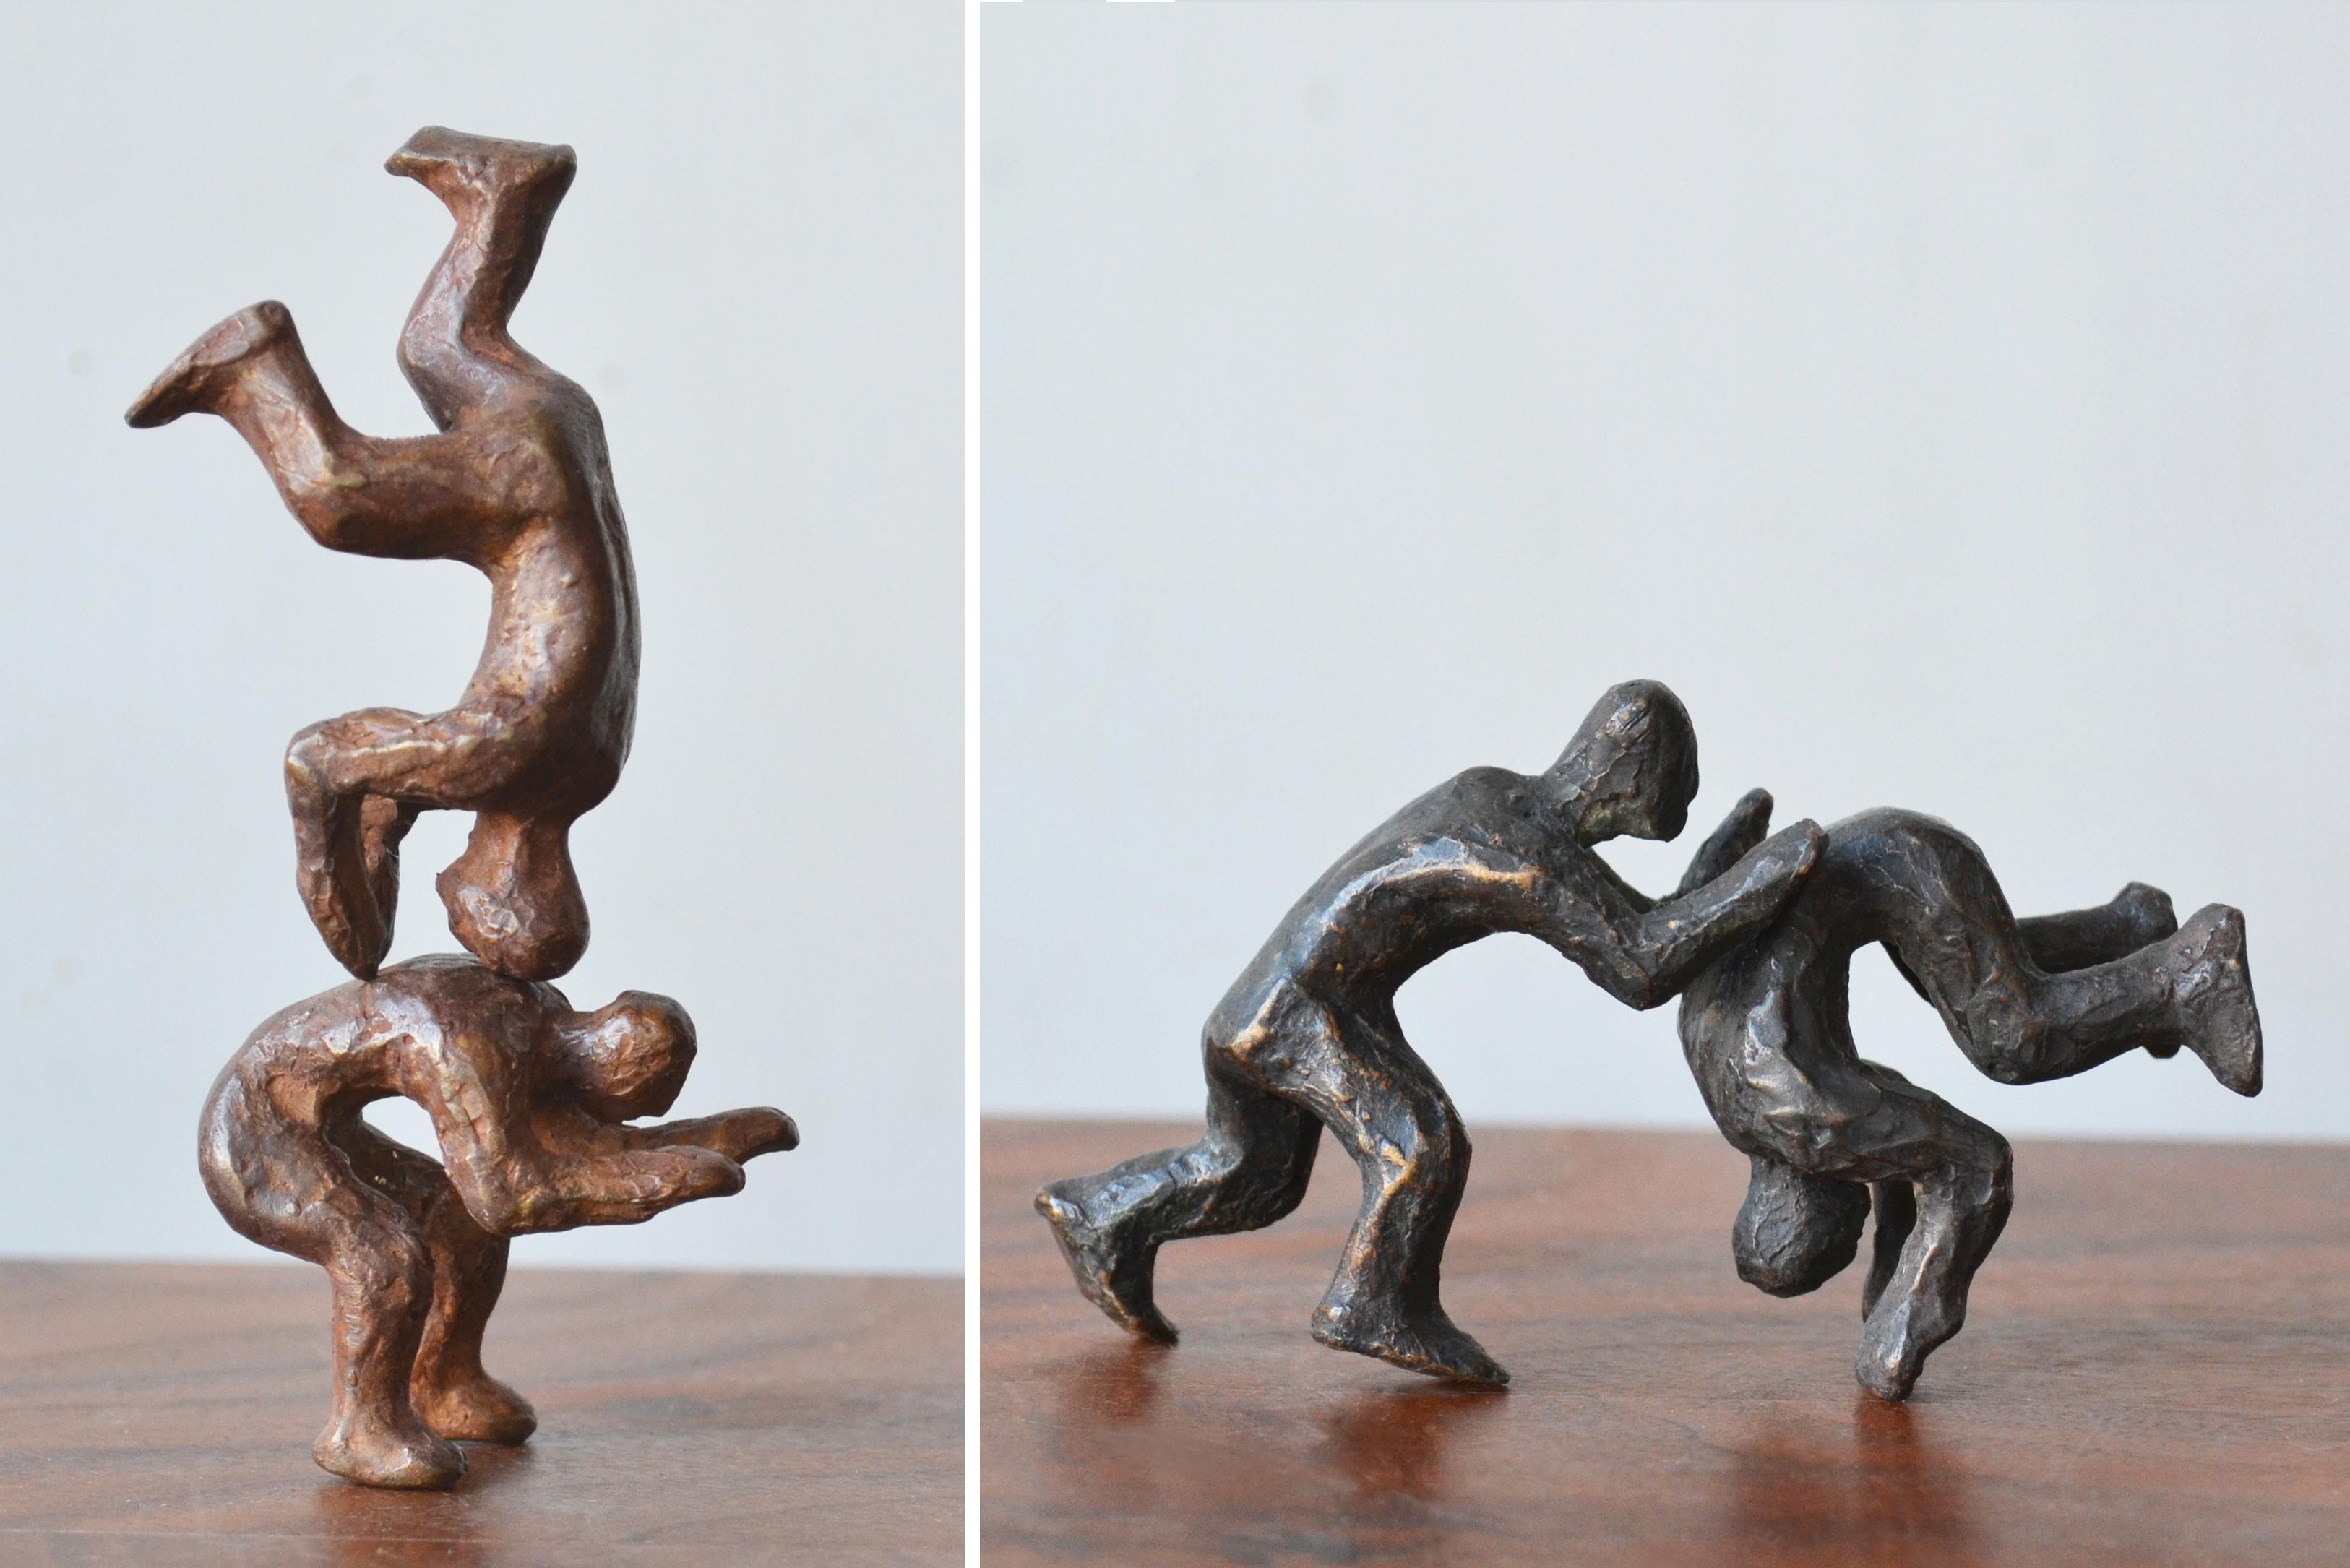 Figurative Sculpture Noa Bornstein - « Pourquoi combattre quand on peut jouer ? » 3 paires de figures interactives en bronze